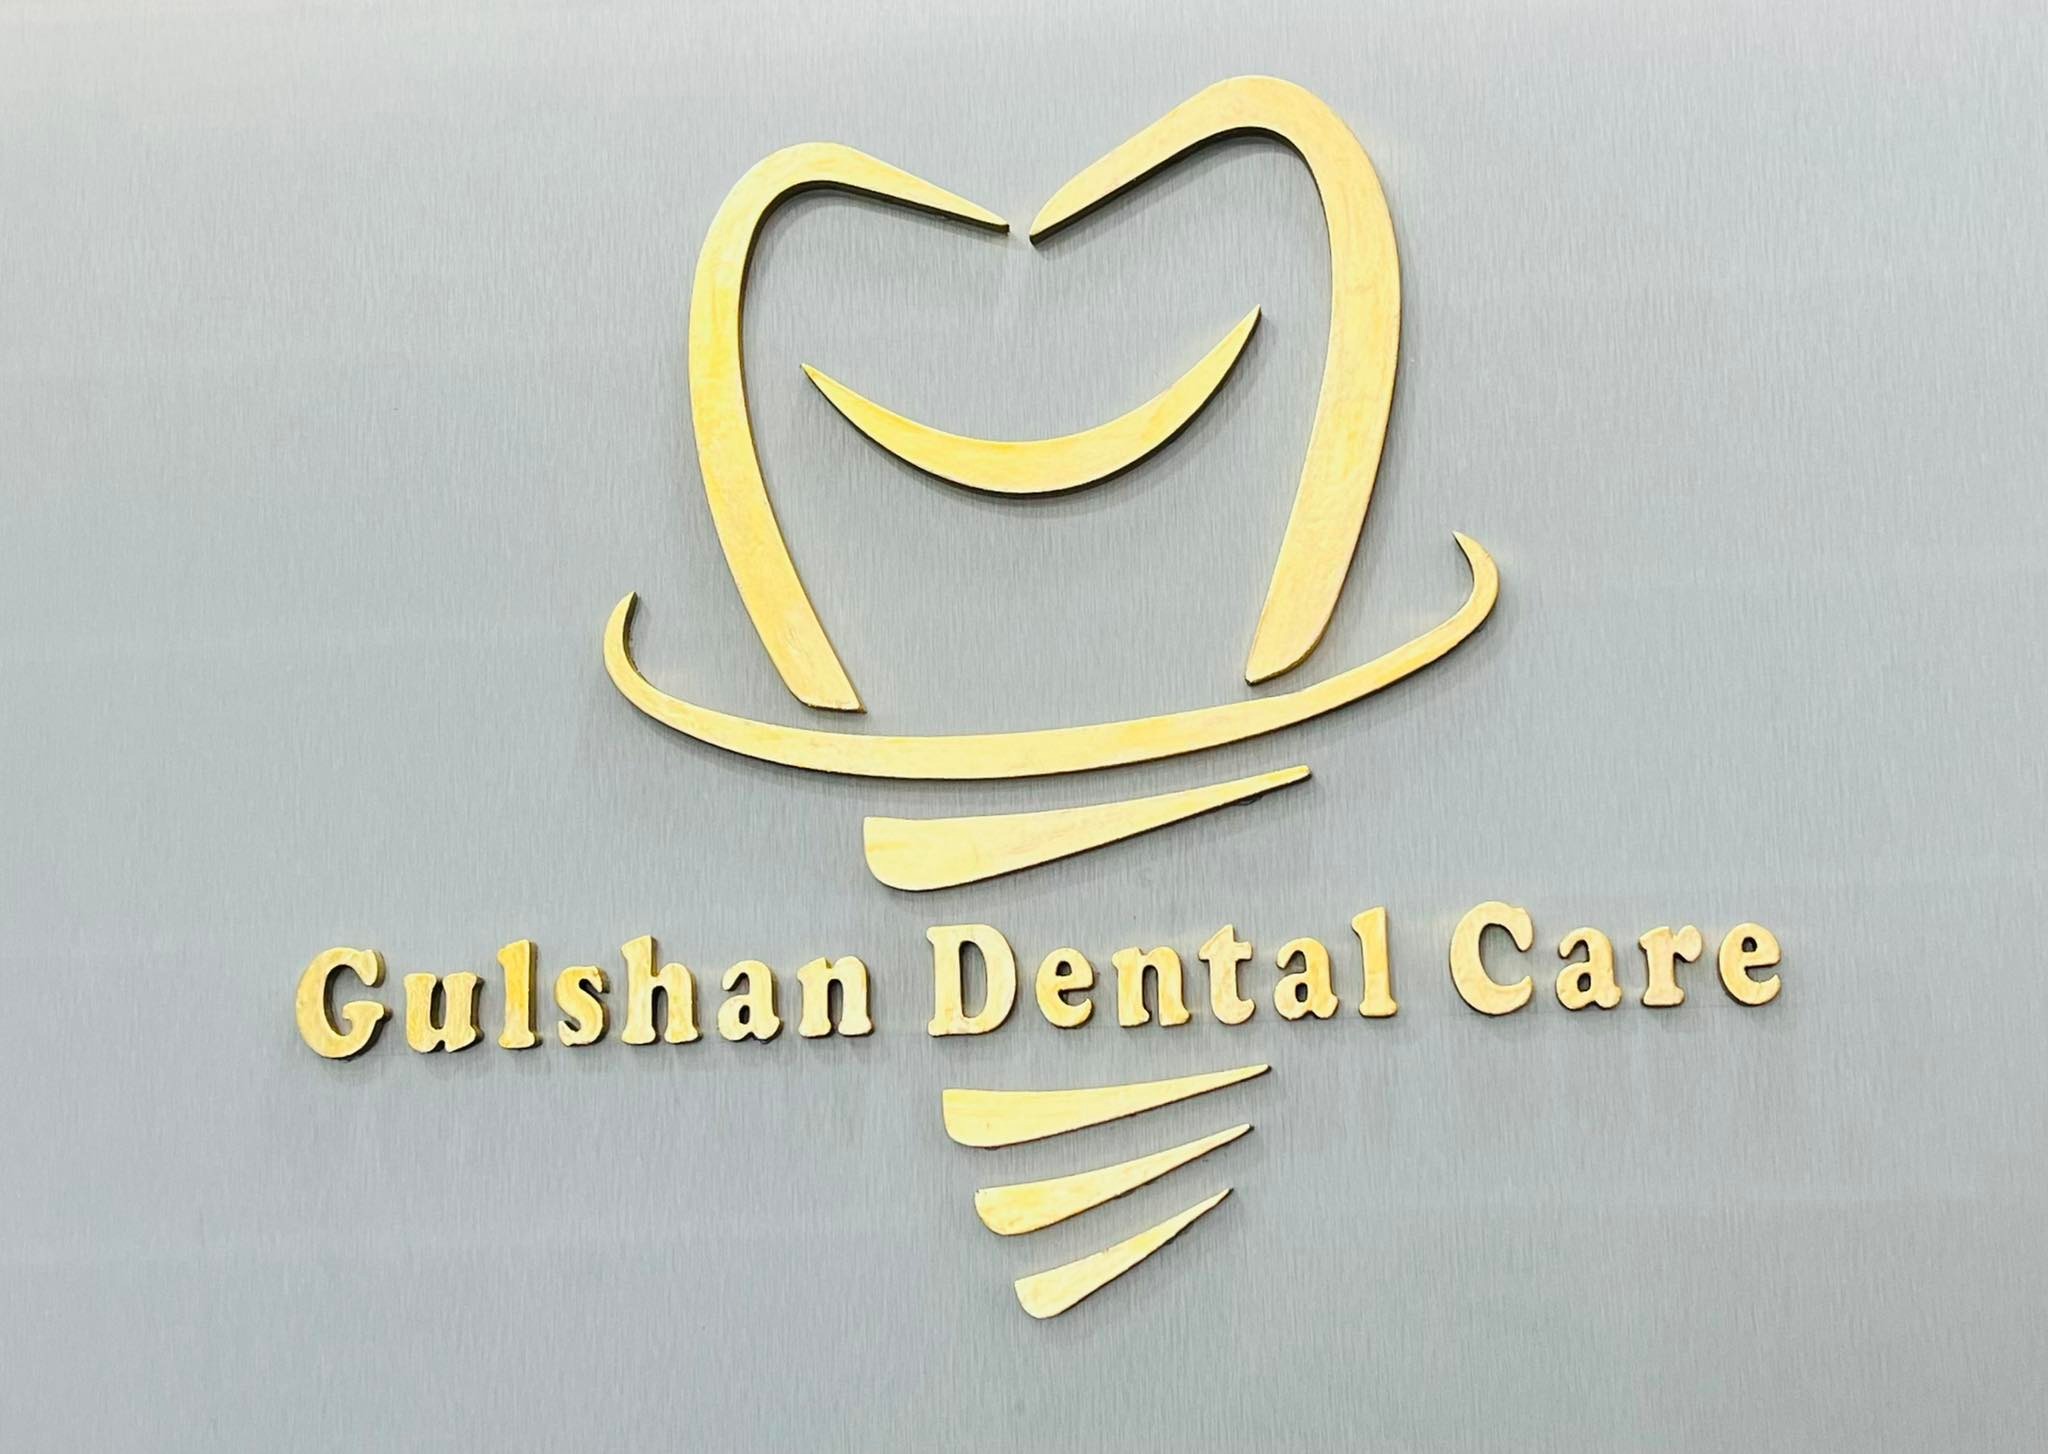 Gulshan Dental Care